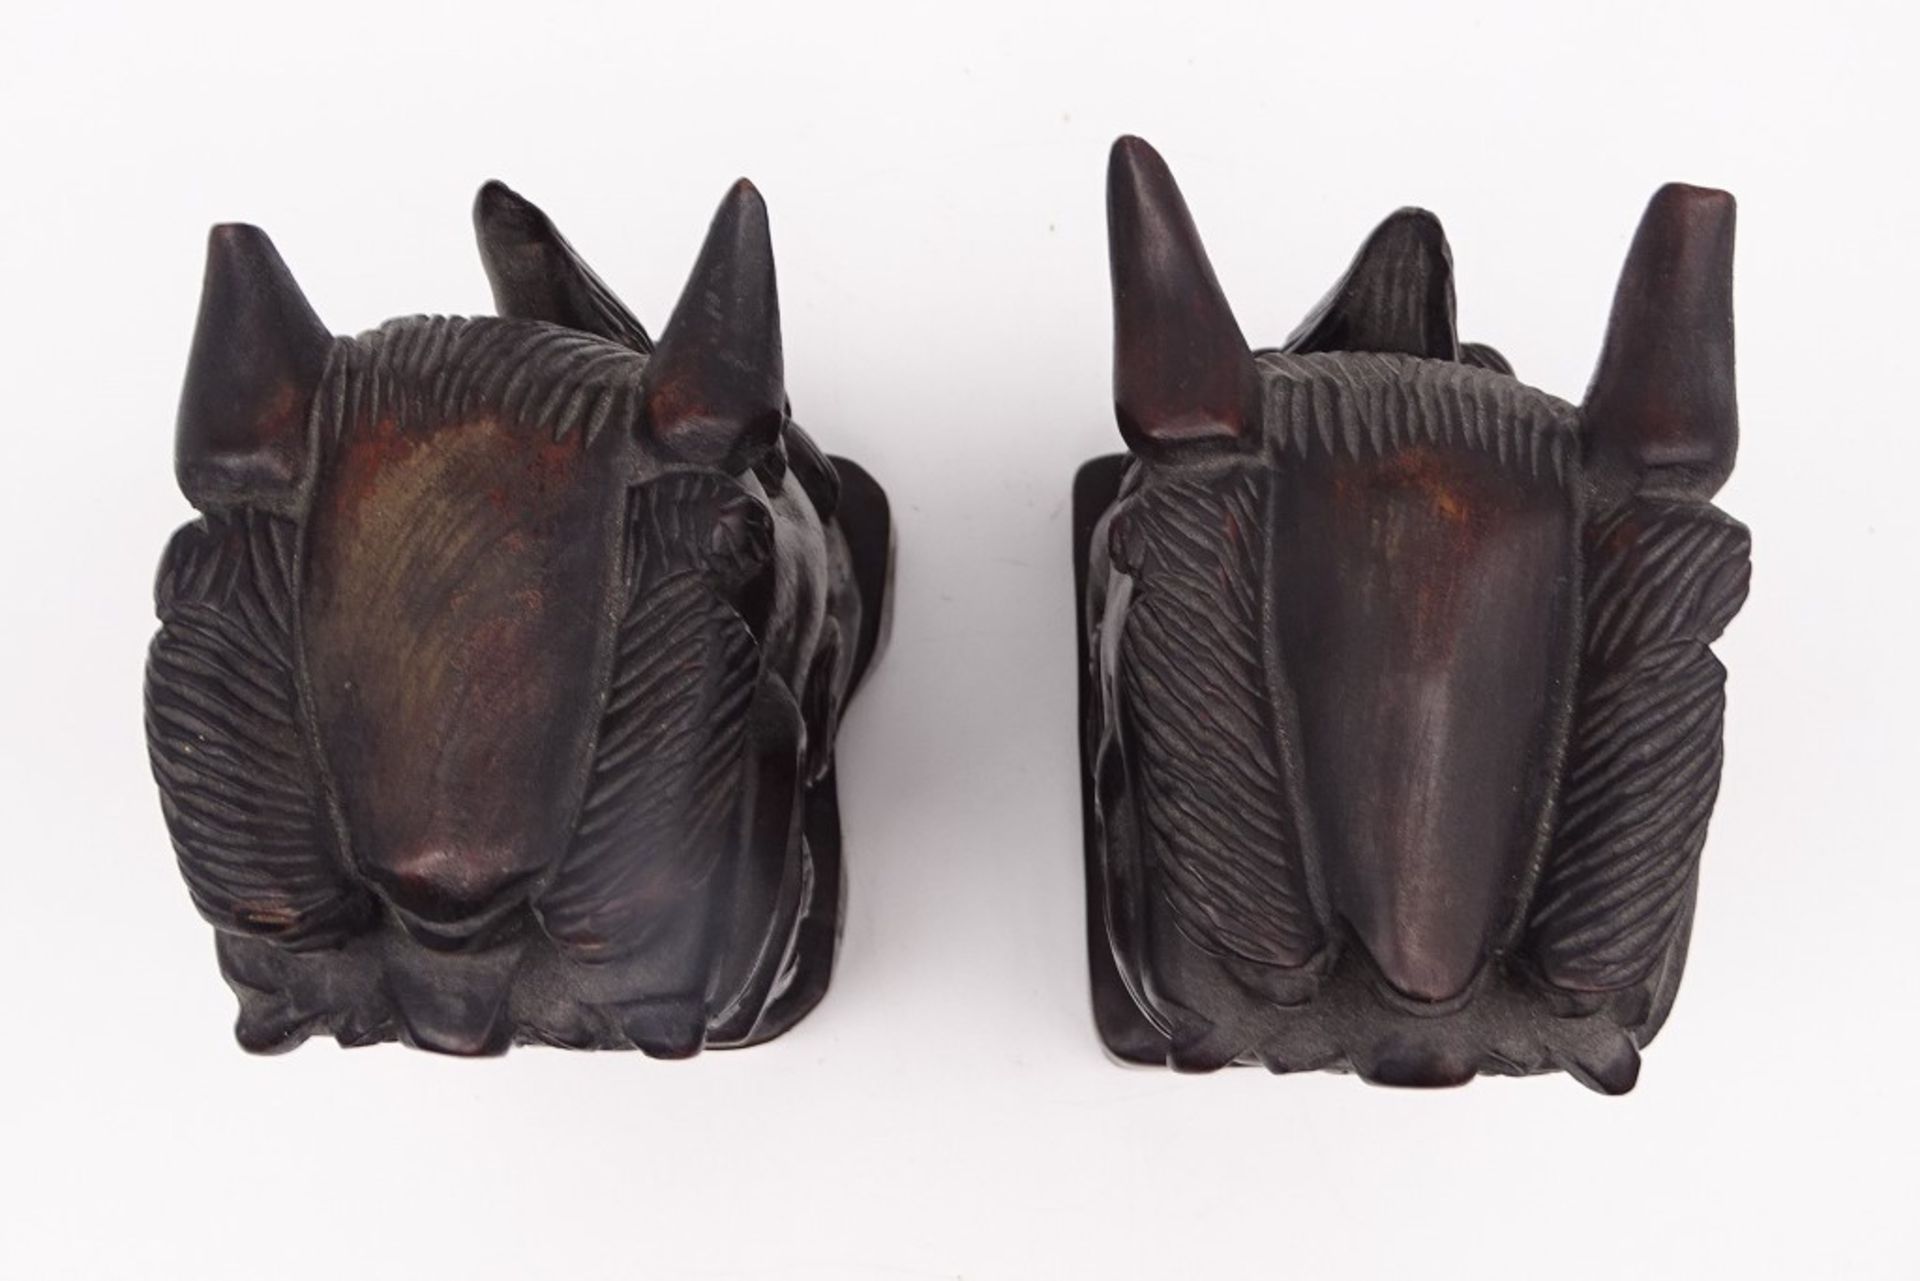 2 Fu-Hunde/ Wächterlöwen aus Holz geschnitzt, ca. 18 x 11 x 7,5 cm, leicht reinigungsbedürftig - Bild 5 aus 5